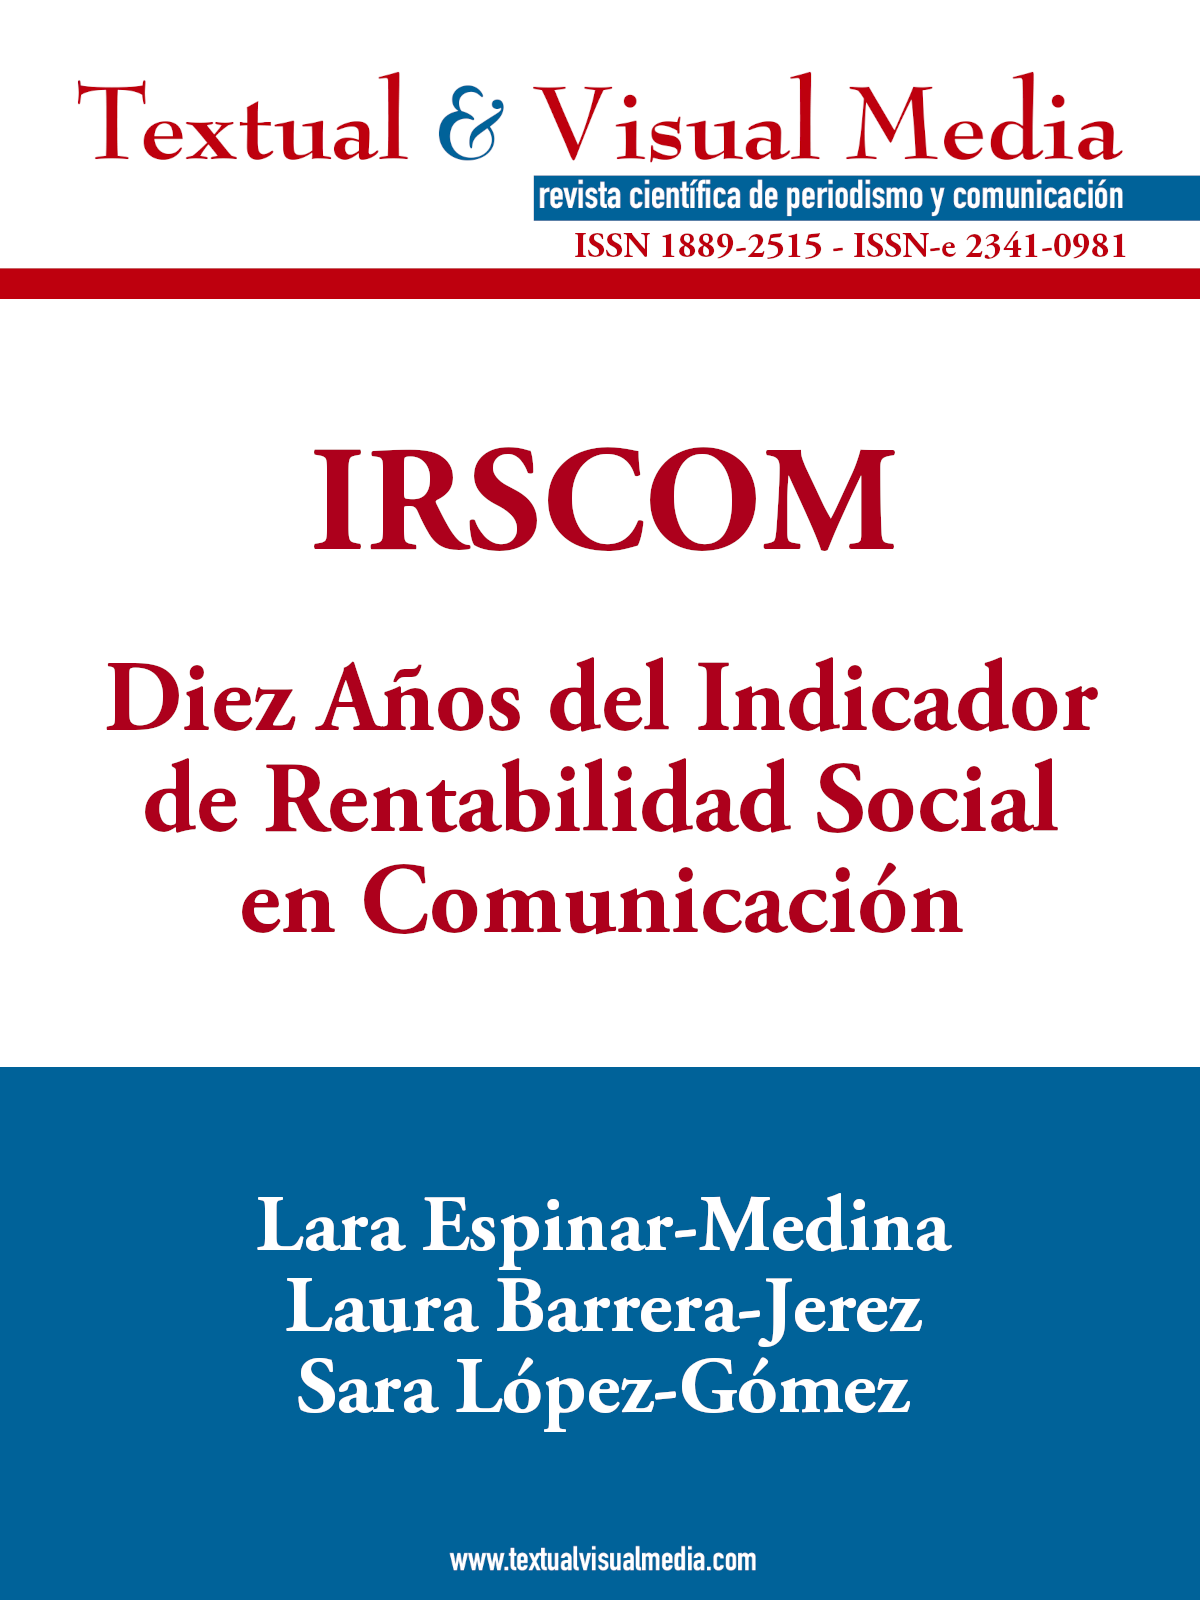 IRSCOM: Diez Años del Indicador de Rentabilidad Social en Comunicación